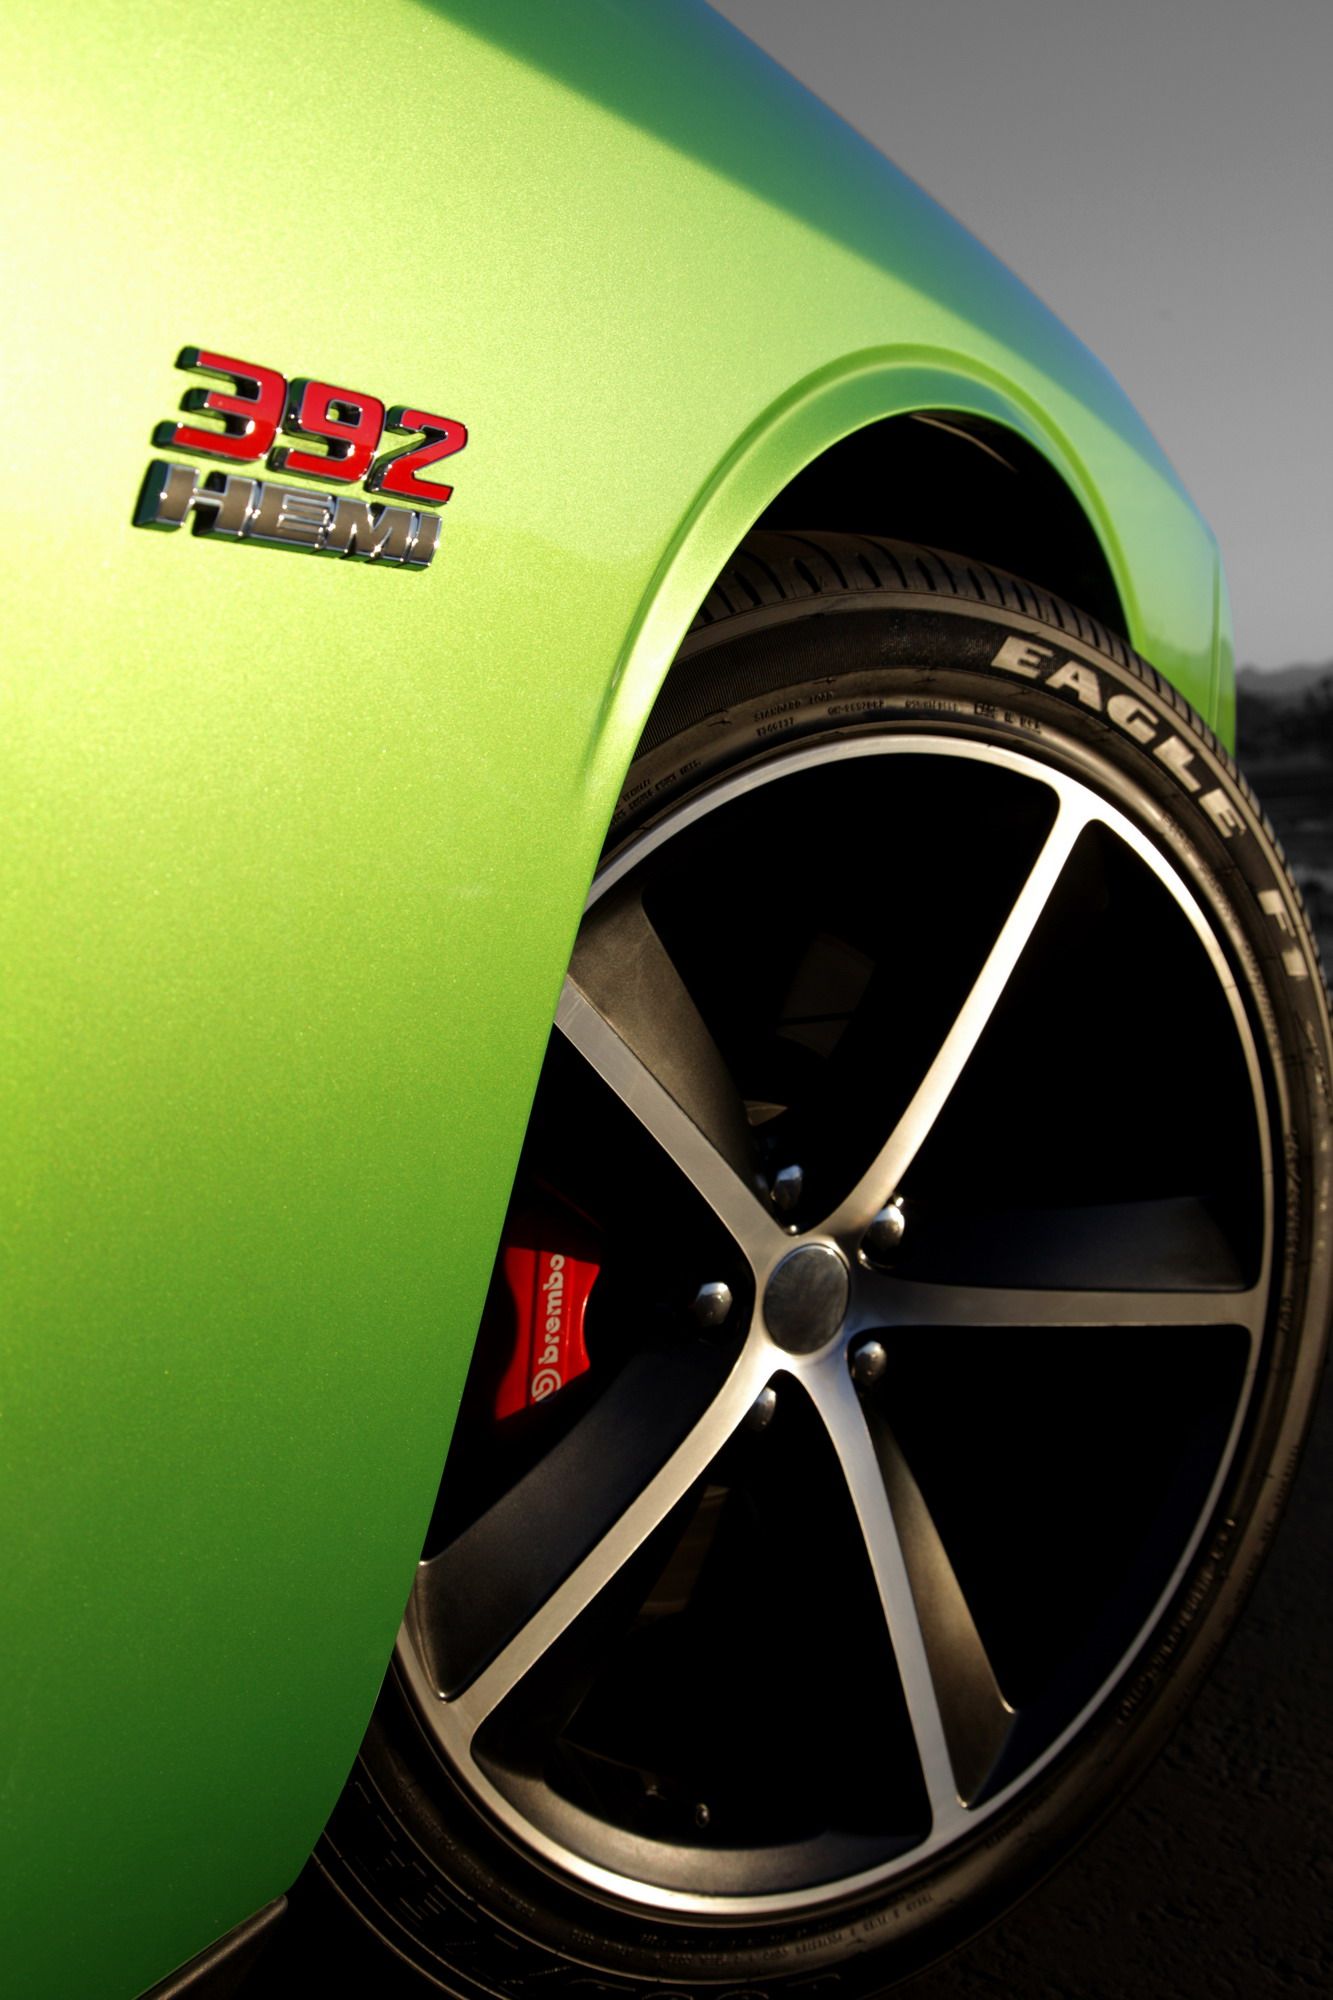 2011 Dodge Challenger SRT8 392 Green With Envy